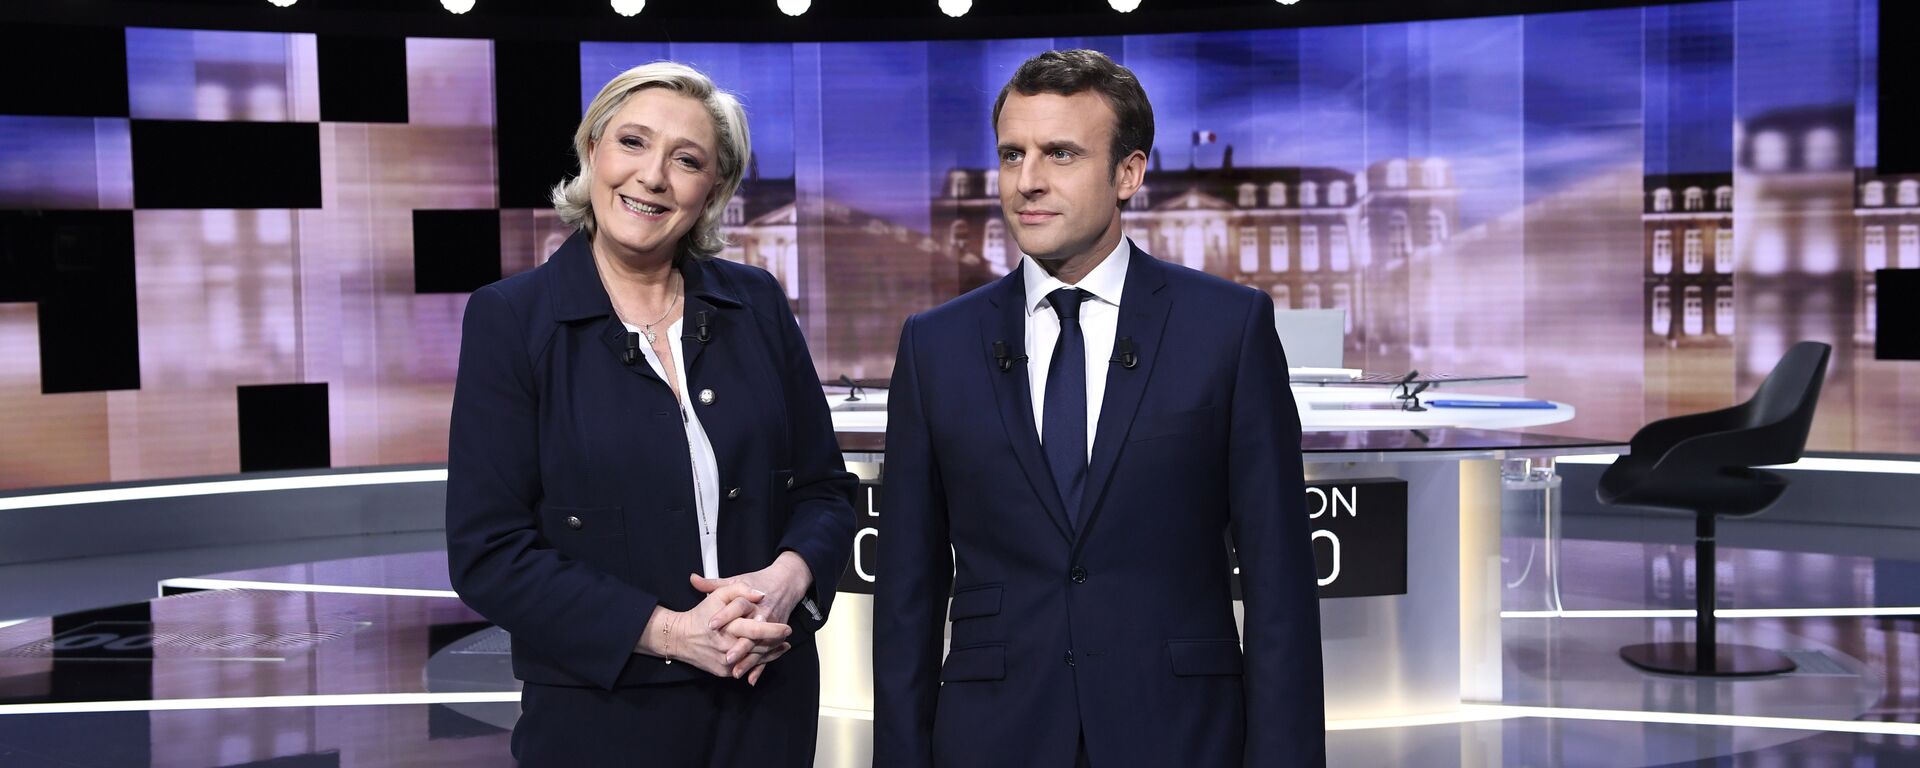 Emmanuel Macron et Marine Le Pen lors du débat télévisé de l'entre-deux-tours, le 3 mai 2017 - Sputnik Afrique, 1920, 29.01.2021